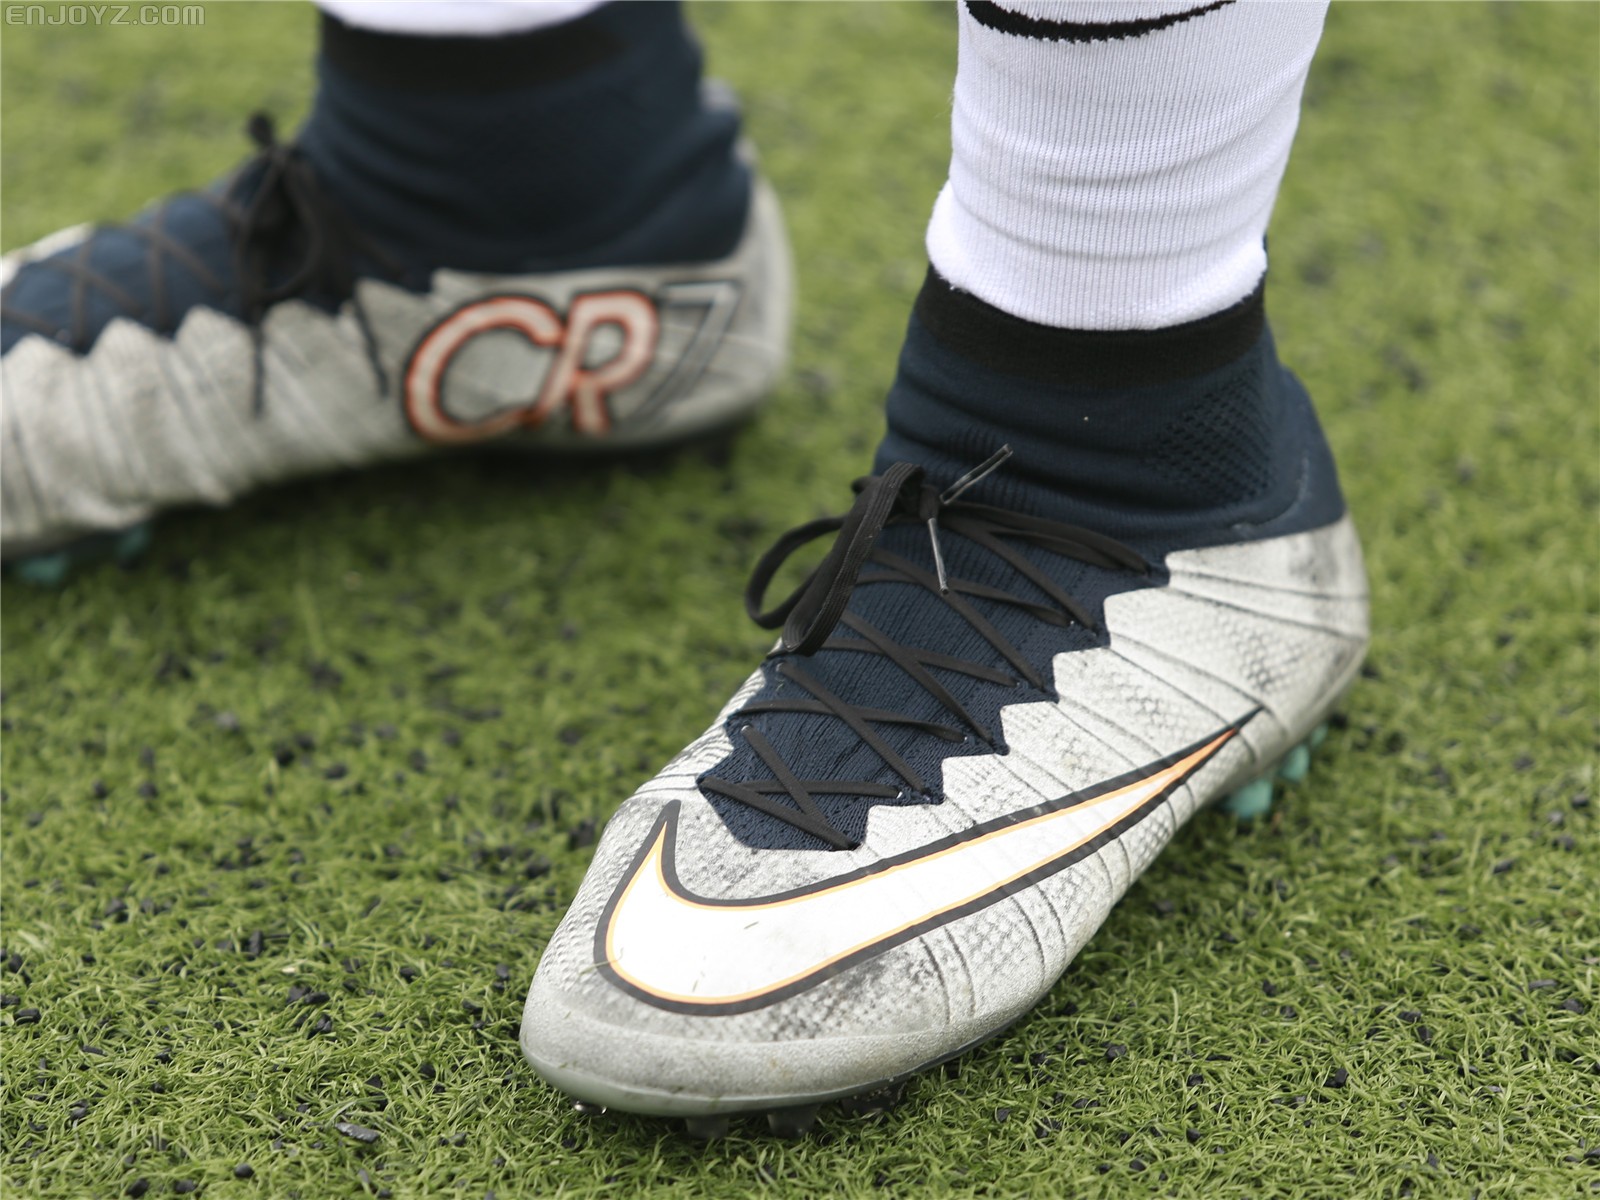 霸道总裁—nike mercurial superfly cr7 ag足球鞋实战评测